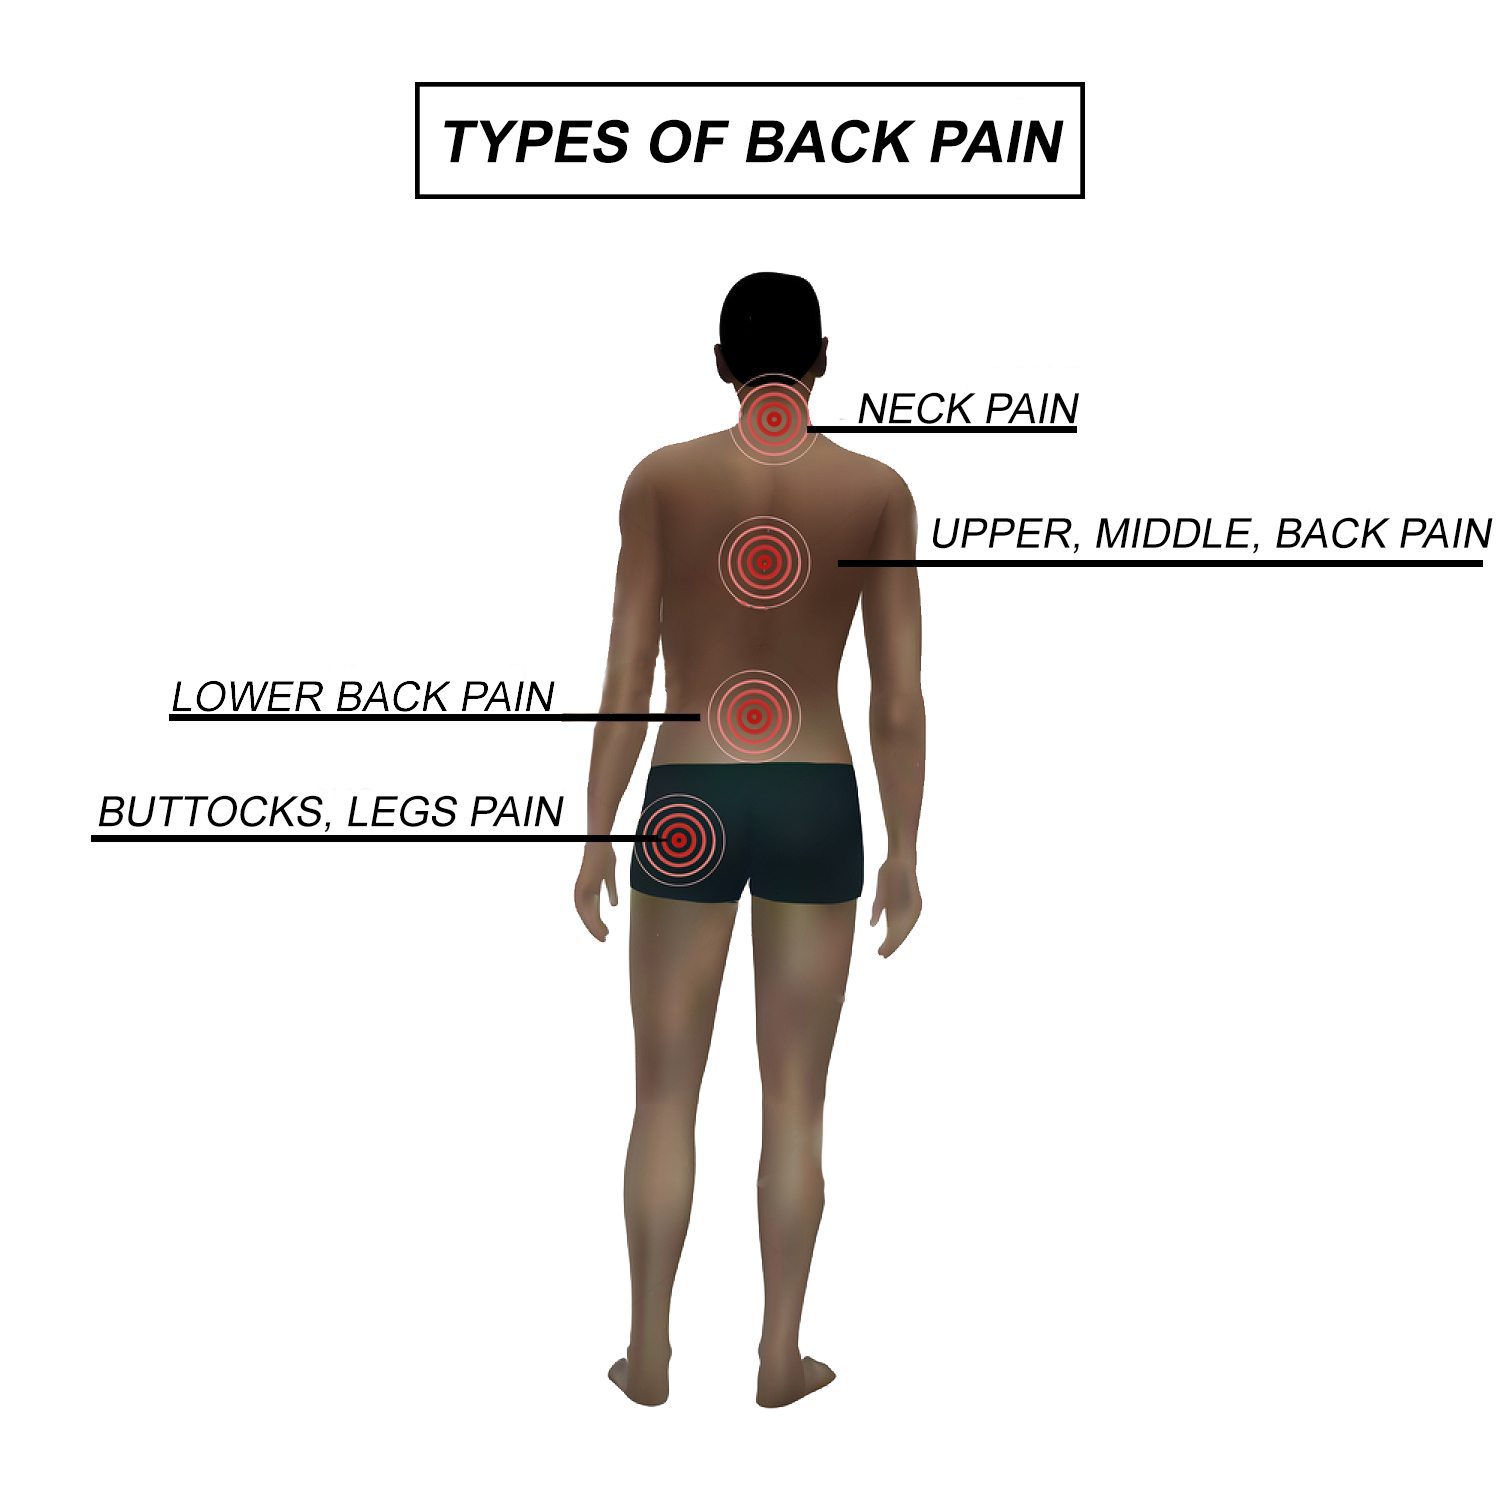 https://wellnessdoctorrx.com/wp-content/uploads/2017/11/Types-of-Back-Pain.jpg